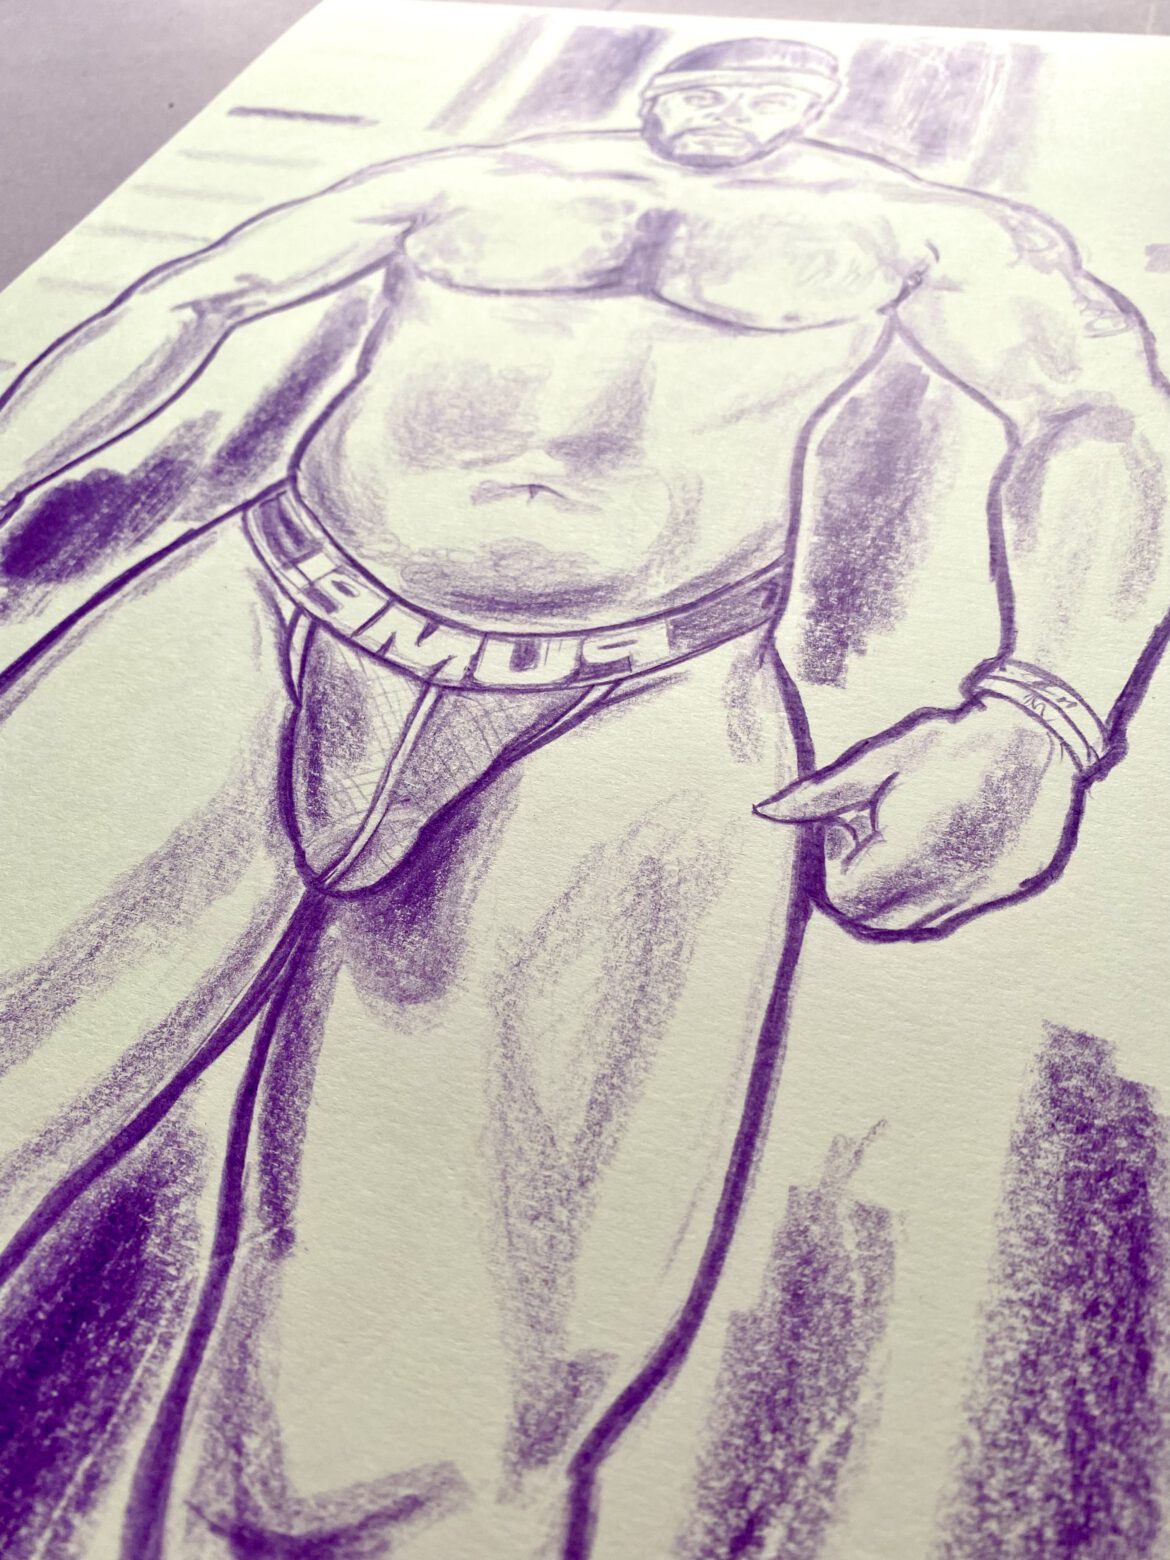 torso drawing of a bodybuilder in a jockstrap by Berlin artist Paul Astor